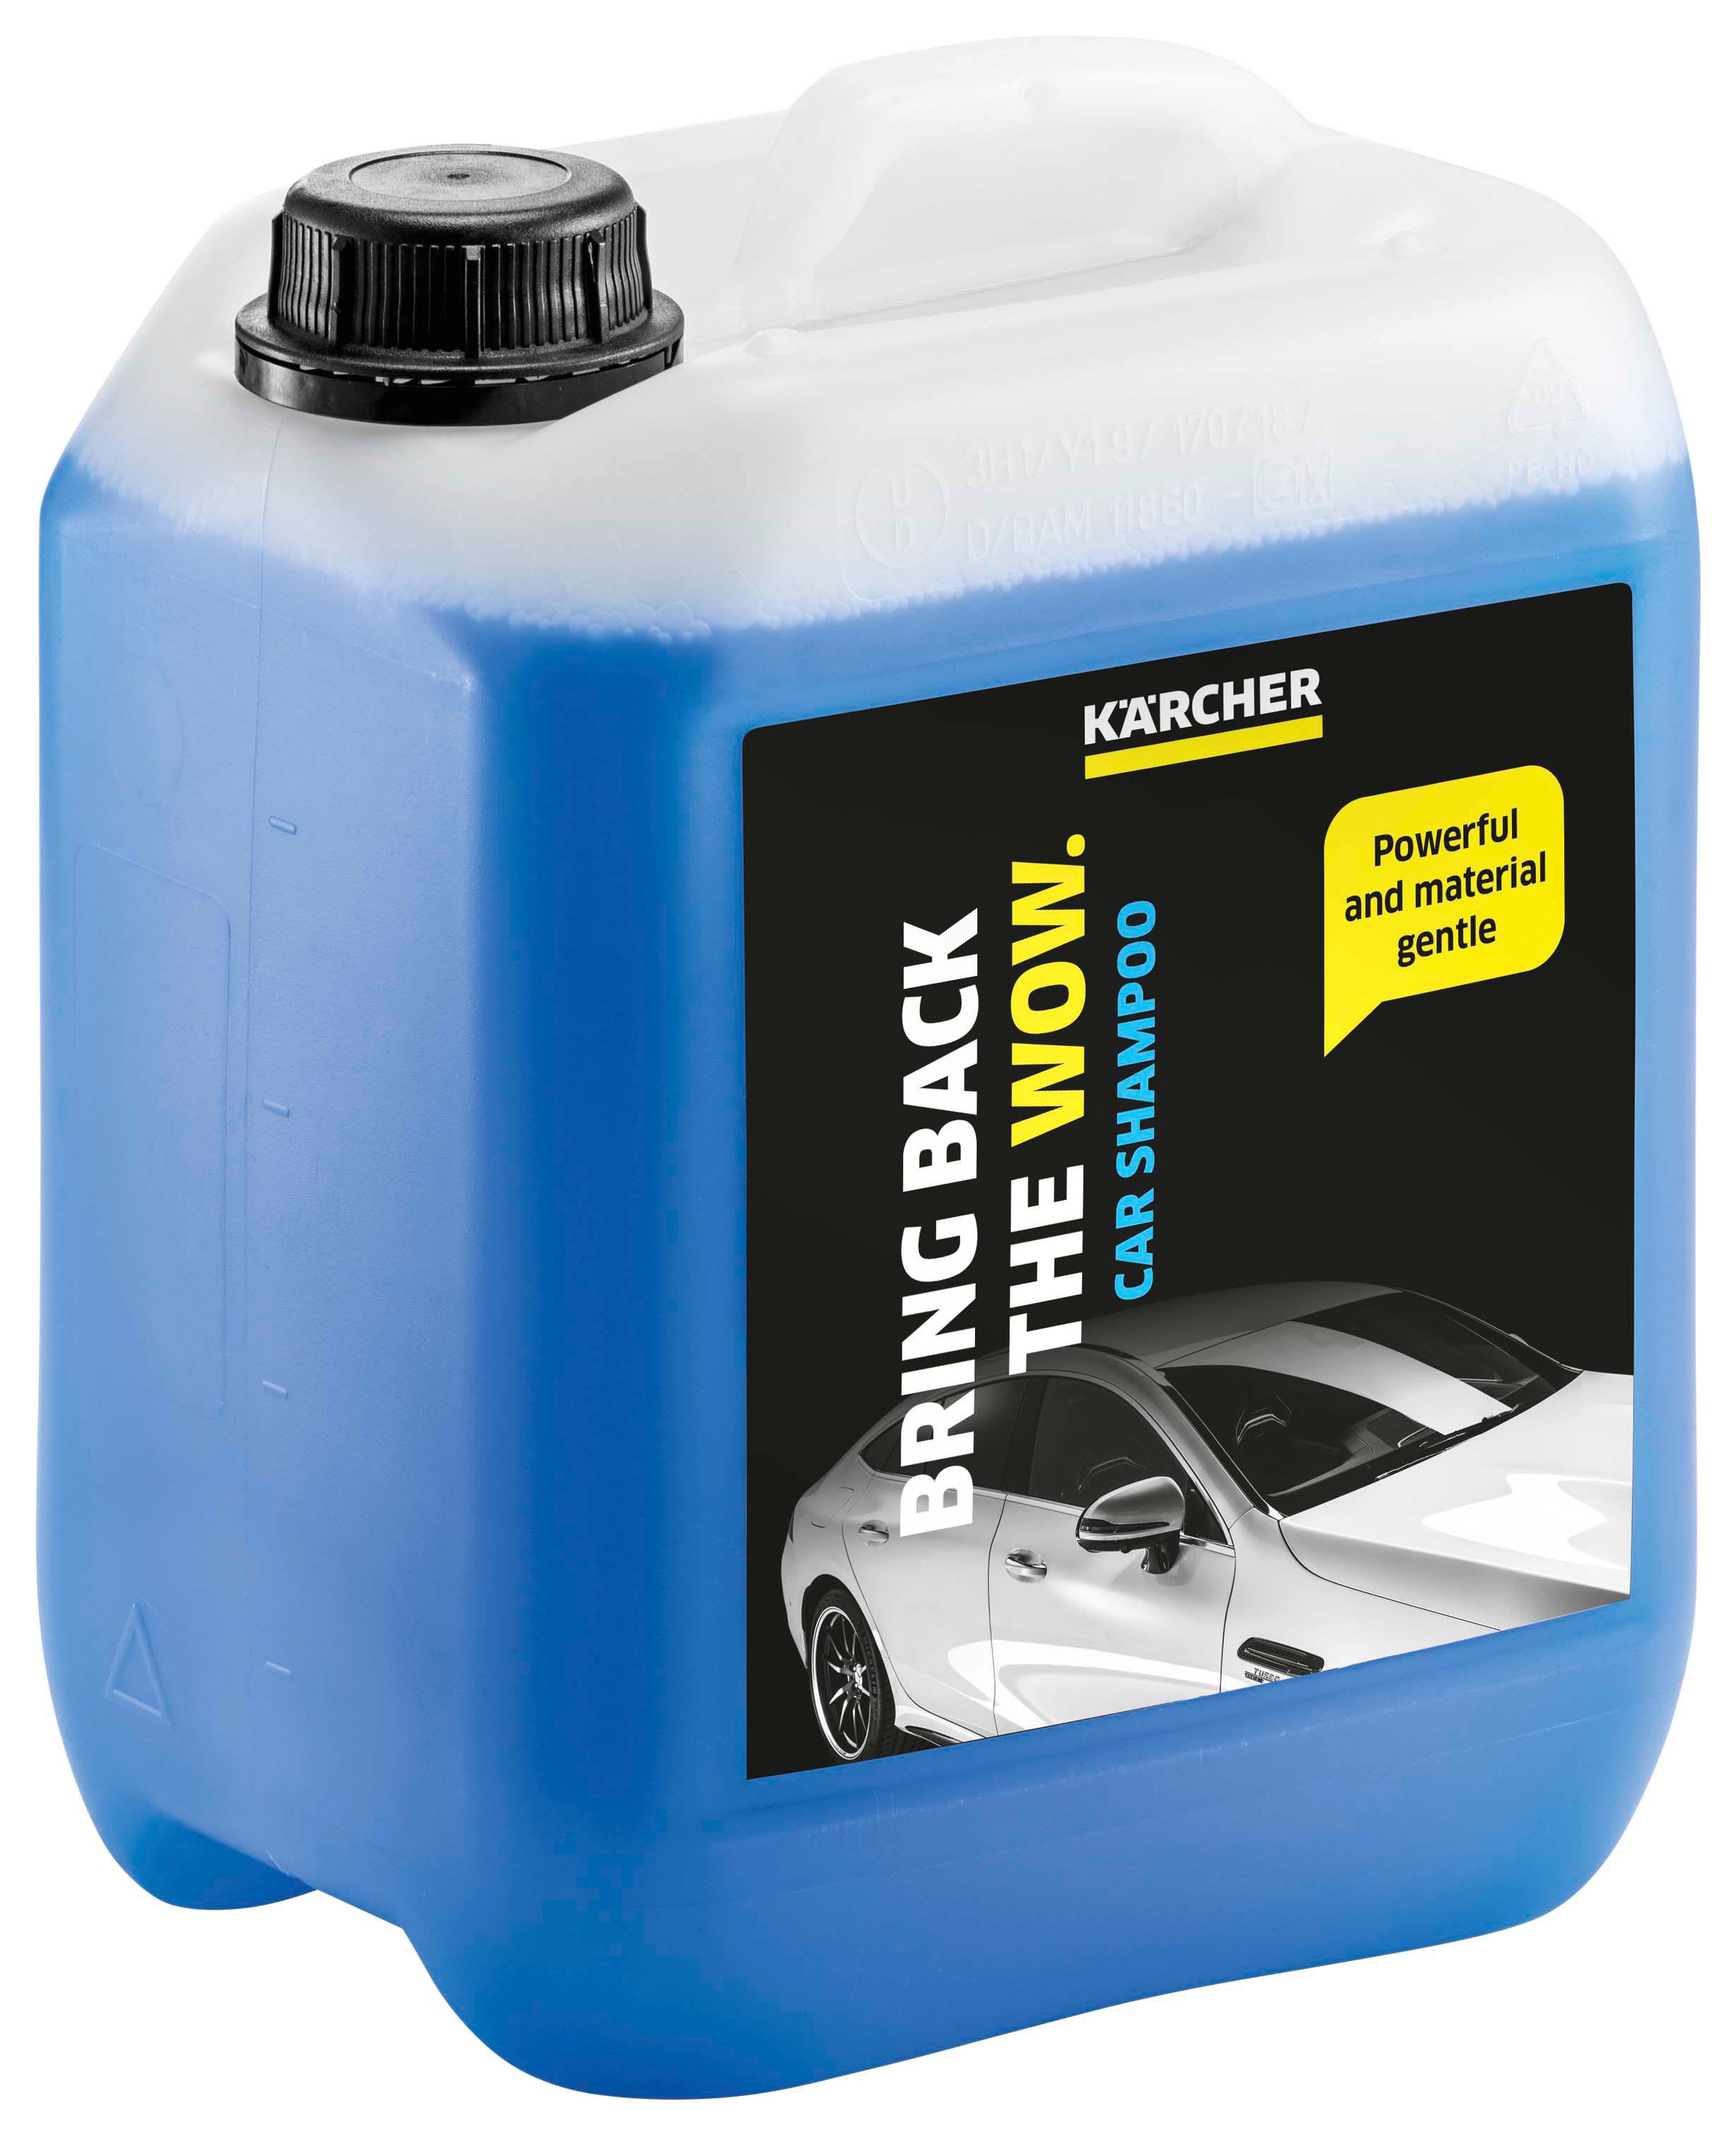 Karcher 5L Foam Car Shampoo